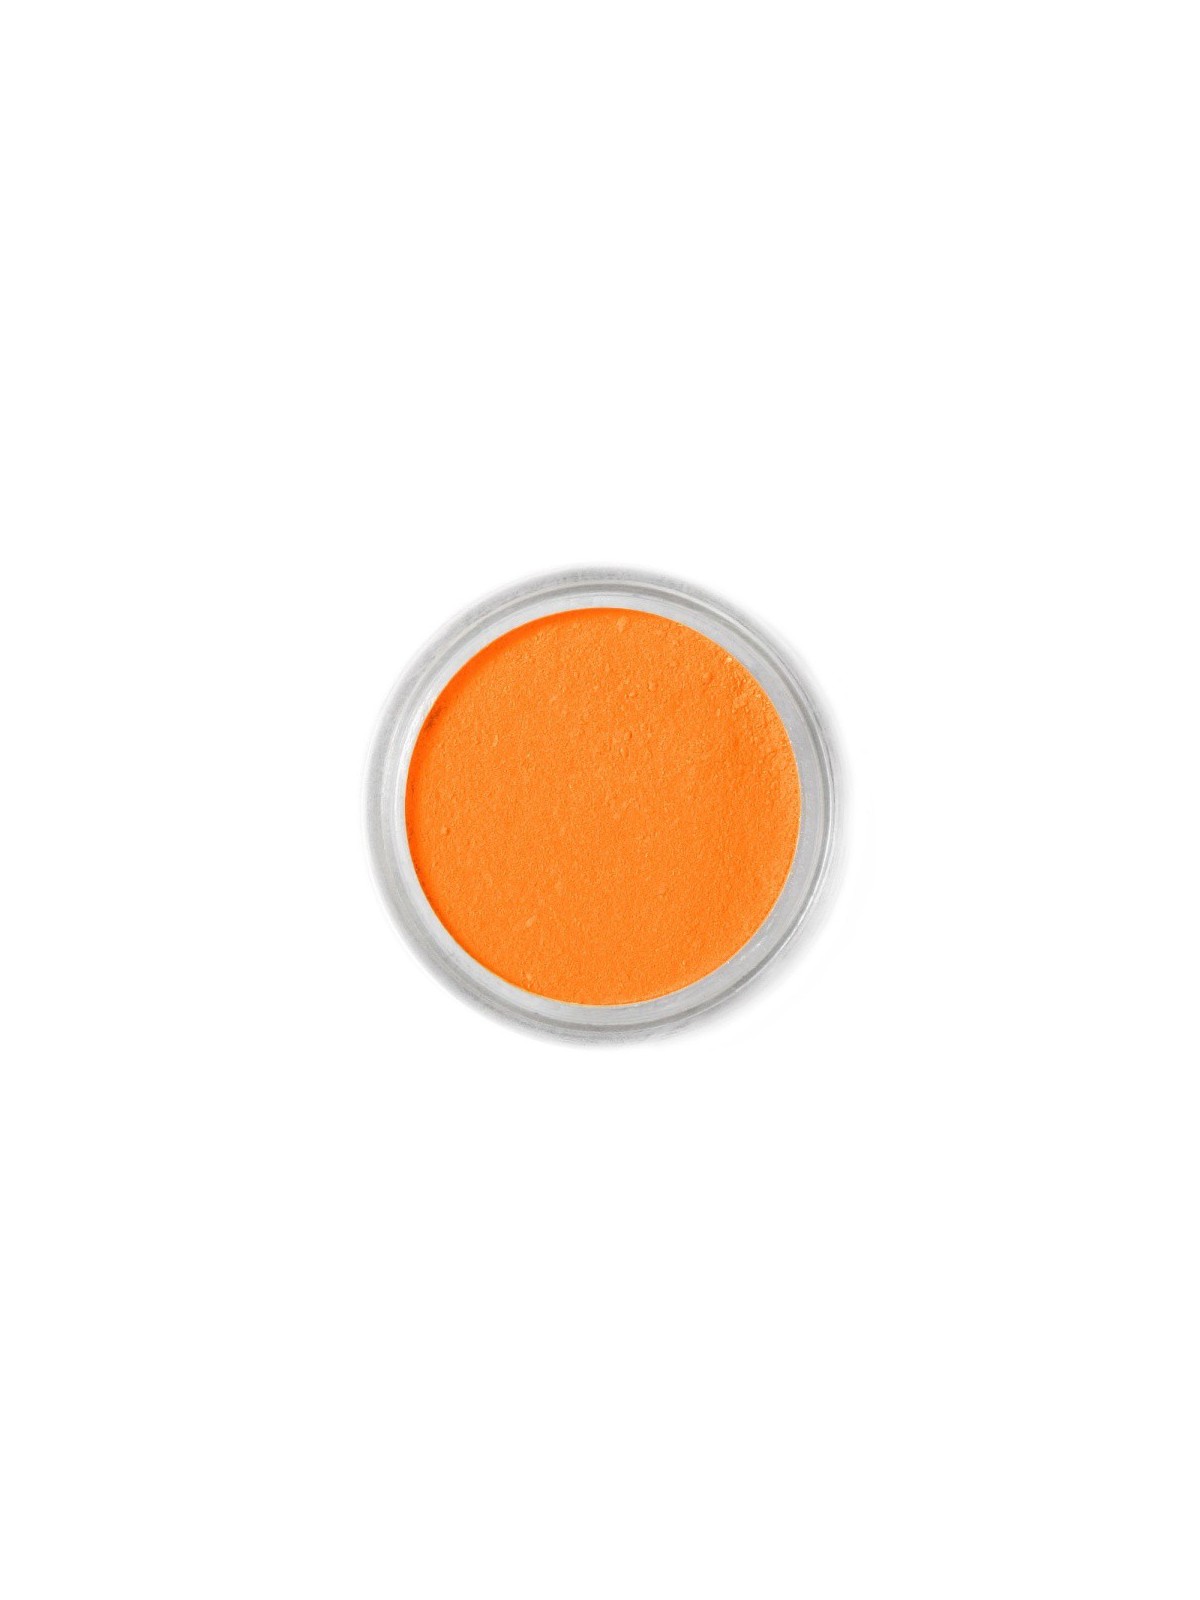 Jedlá prachová farba Fractal - Mandarin (1,7 g)